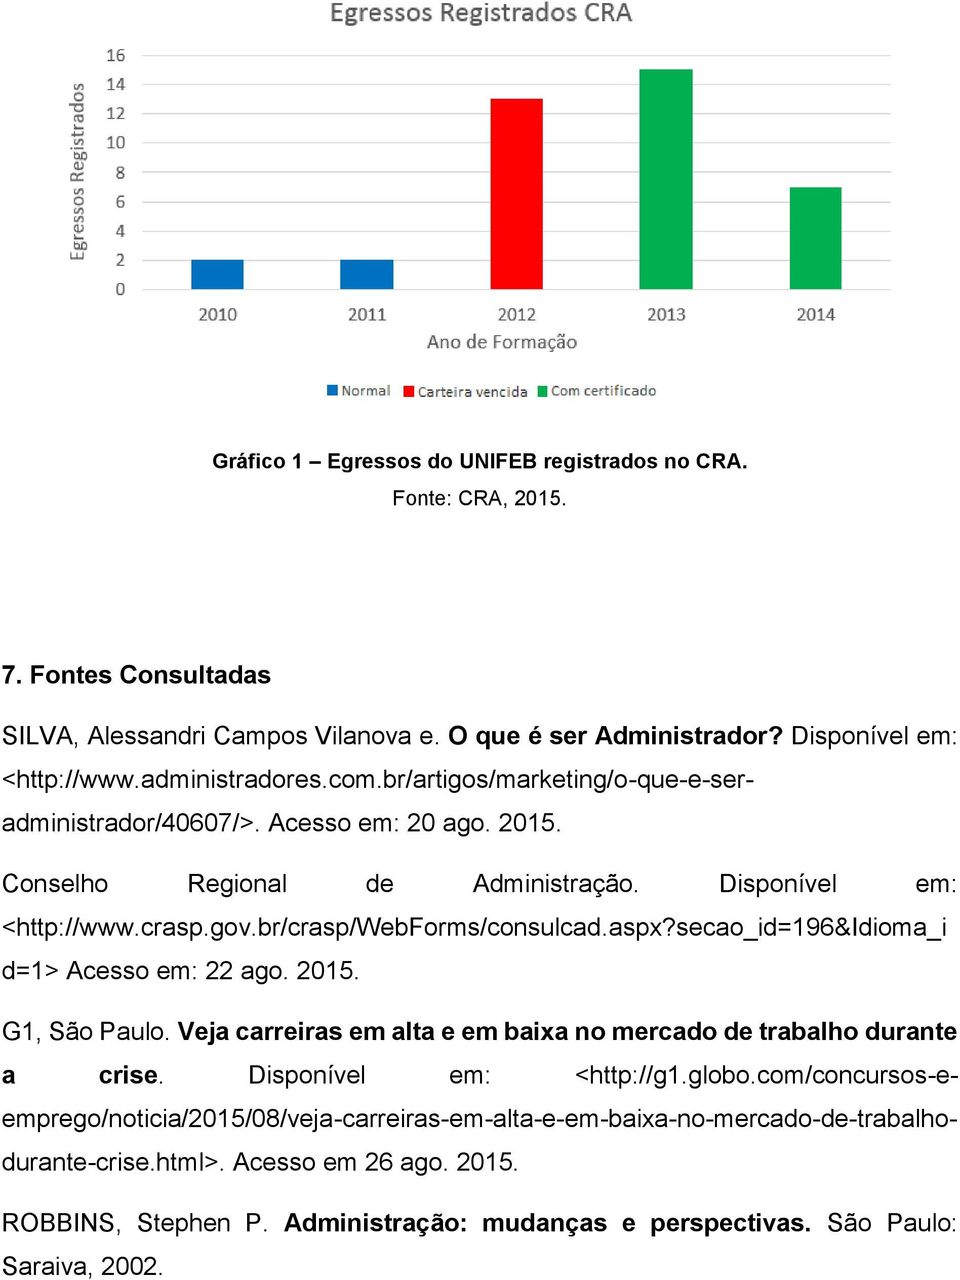 secao_id=196&idioma_i d=1> Acesso em: 22 ago. 2015. G1, São Paulo. Veja carreiras em alta e em baixa no mercado de trabalho durante a crise. Disponível em: <http://g1.globo.